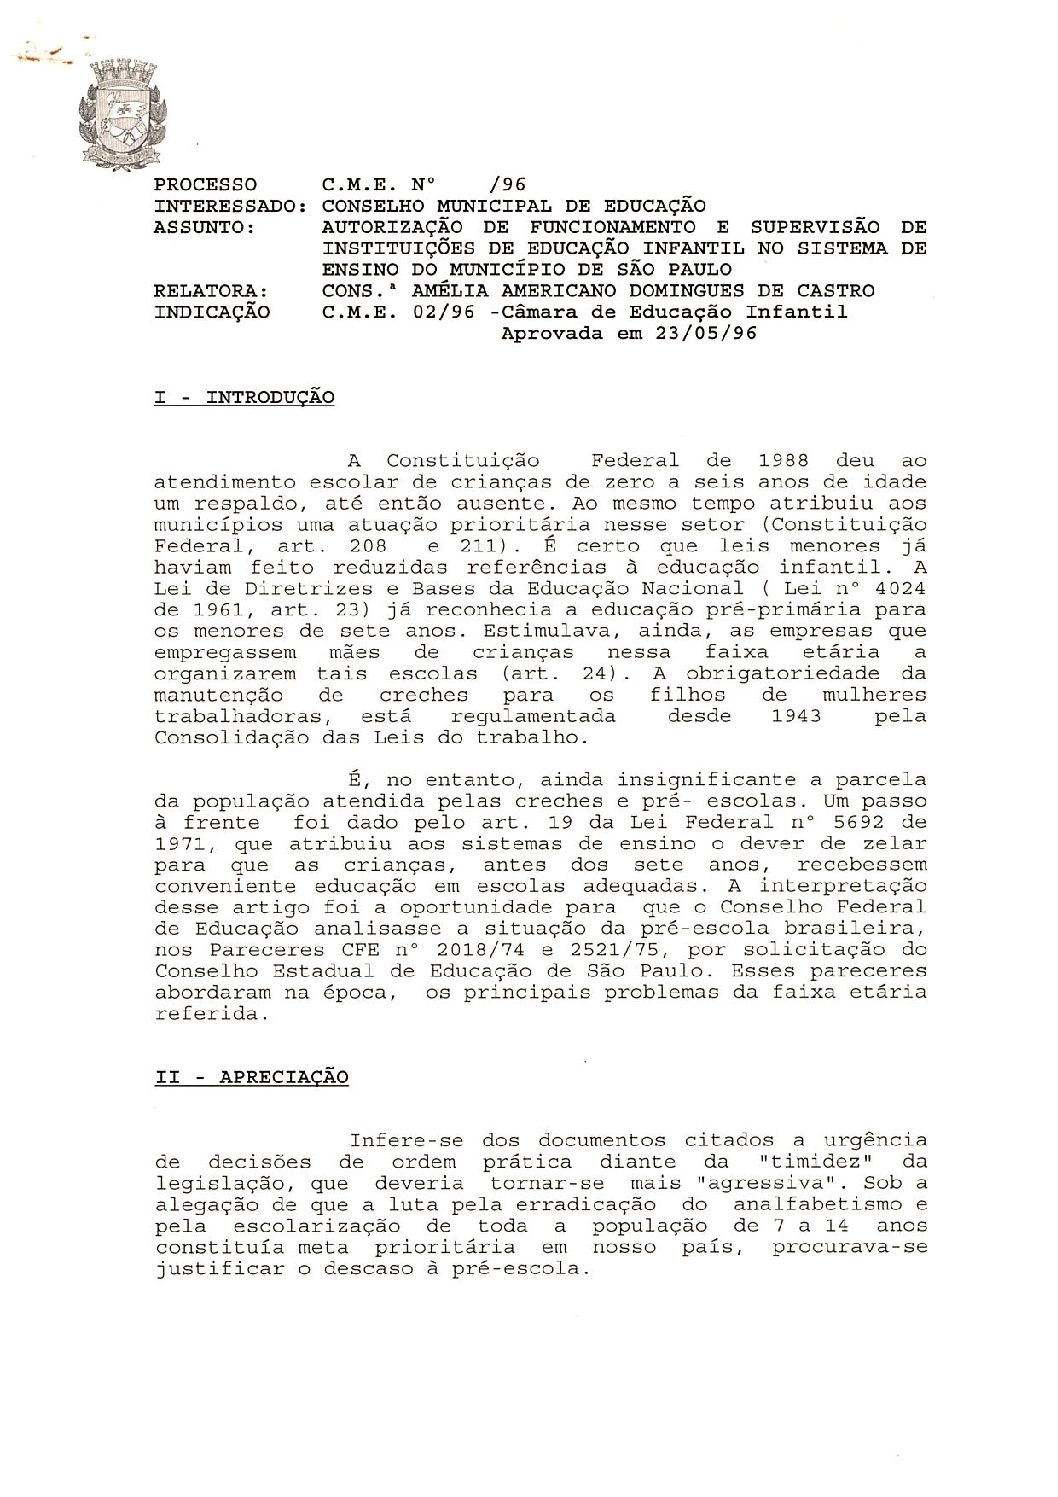 Indicação CME nº 02/1996 - Autorização de Funcionamento e Supervisão de Instituições de Educação Infantil no Sistema de Ensino do Município de São Paulo